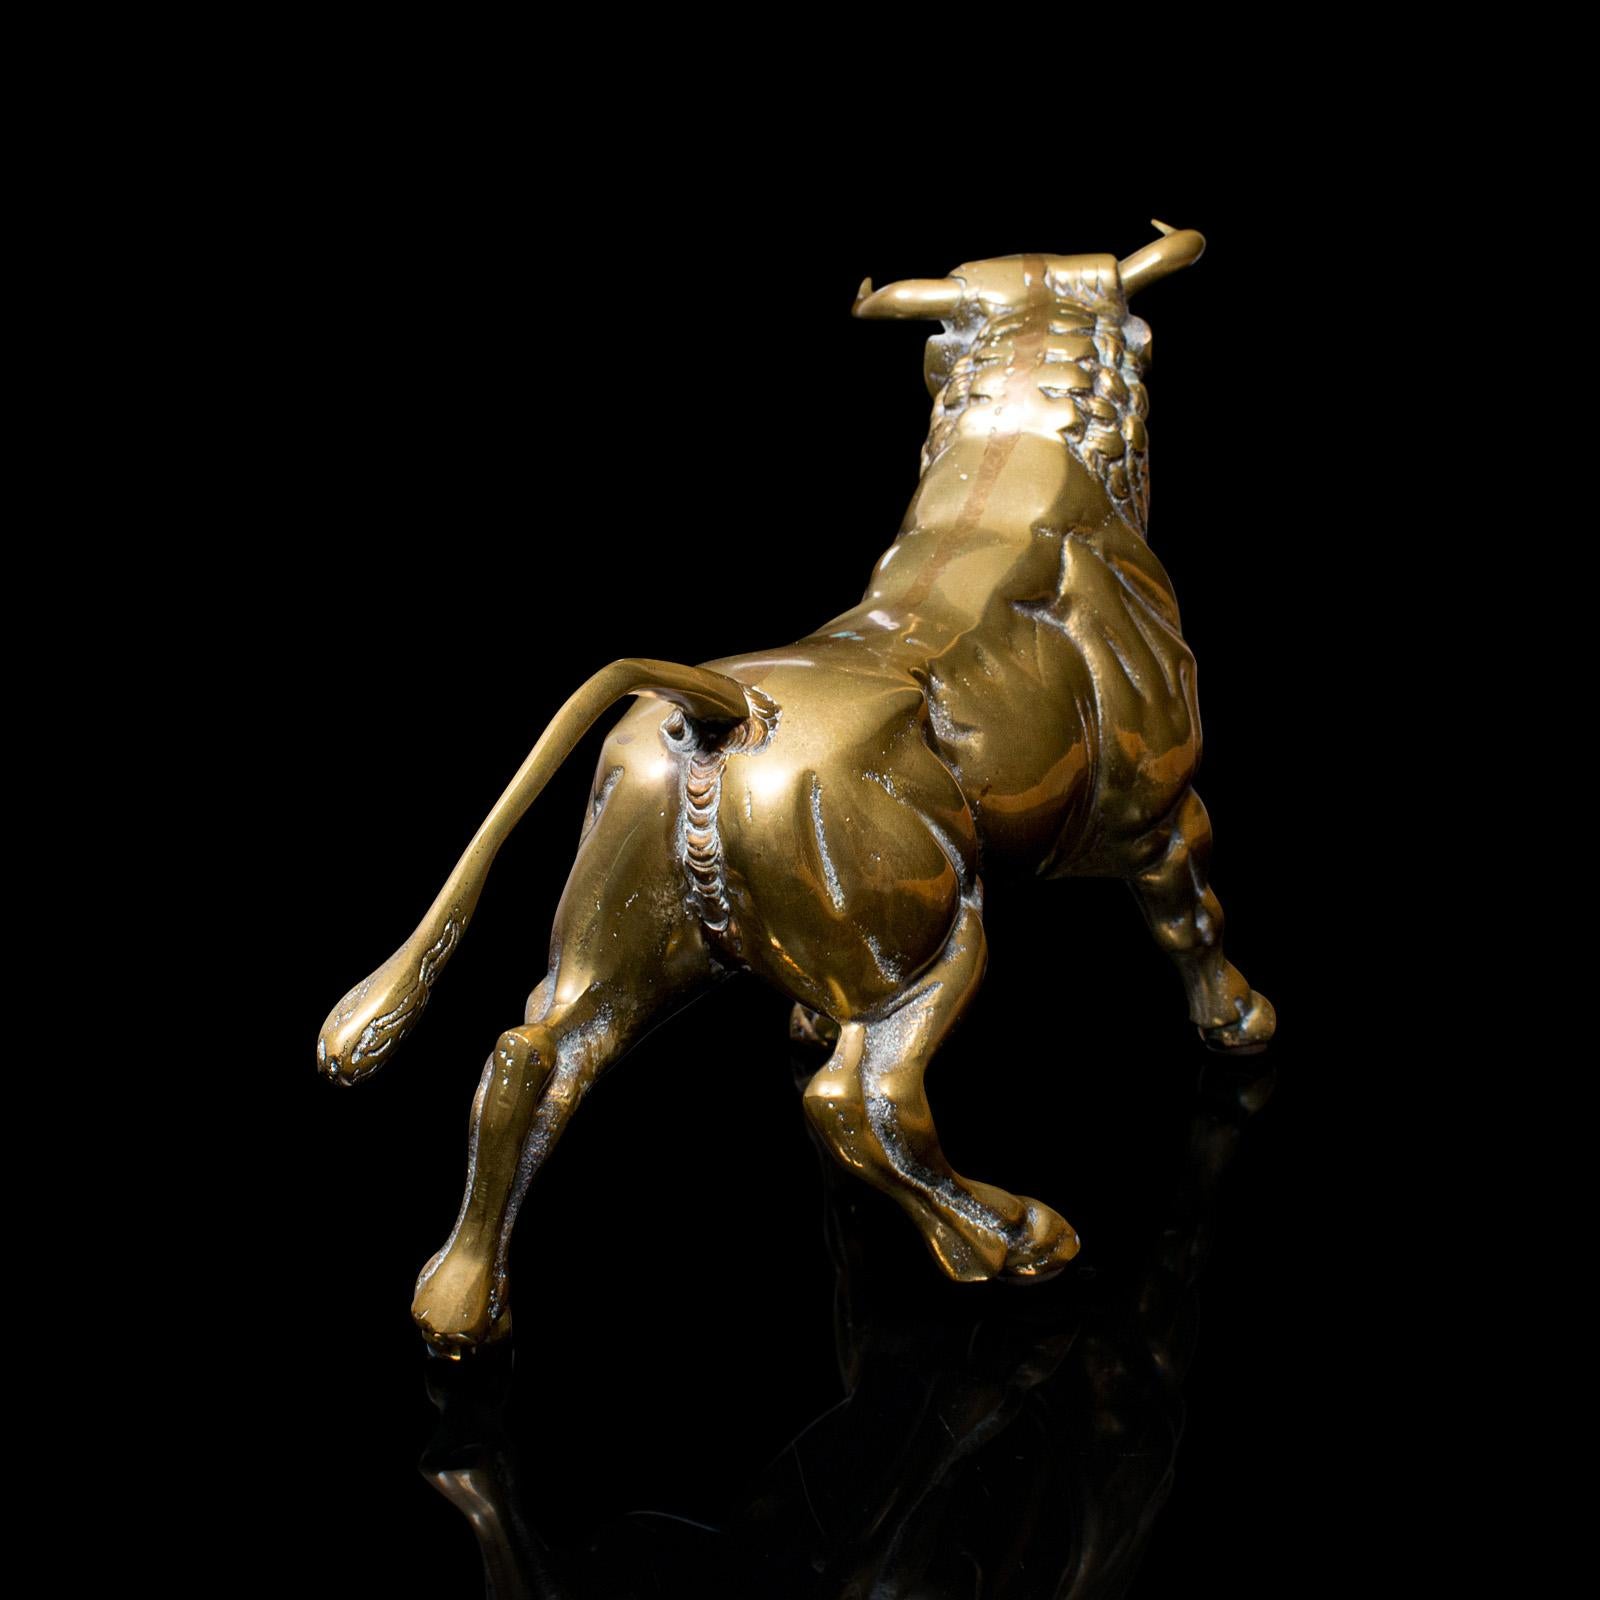 Antique Fighting Bull Figure, Italian, Heavy, Brass, Ornament, Statue, Victorian 2